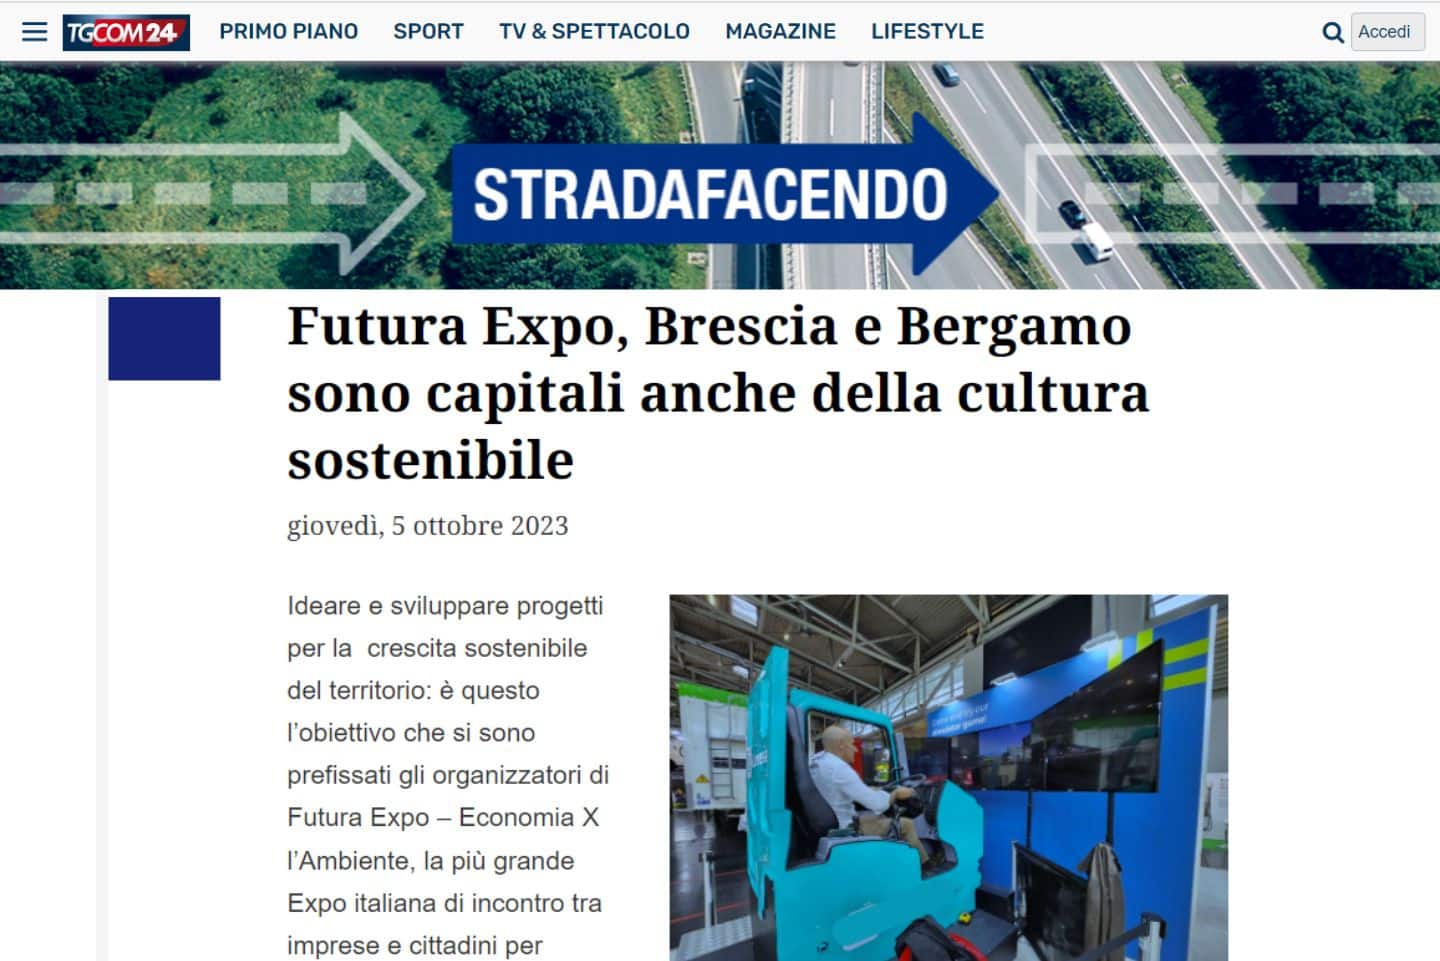 Simulatore Camion TGCom Fbrand Futura Expo Brescia FAI